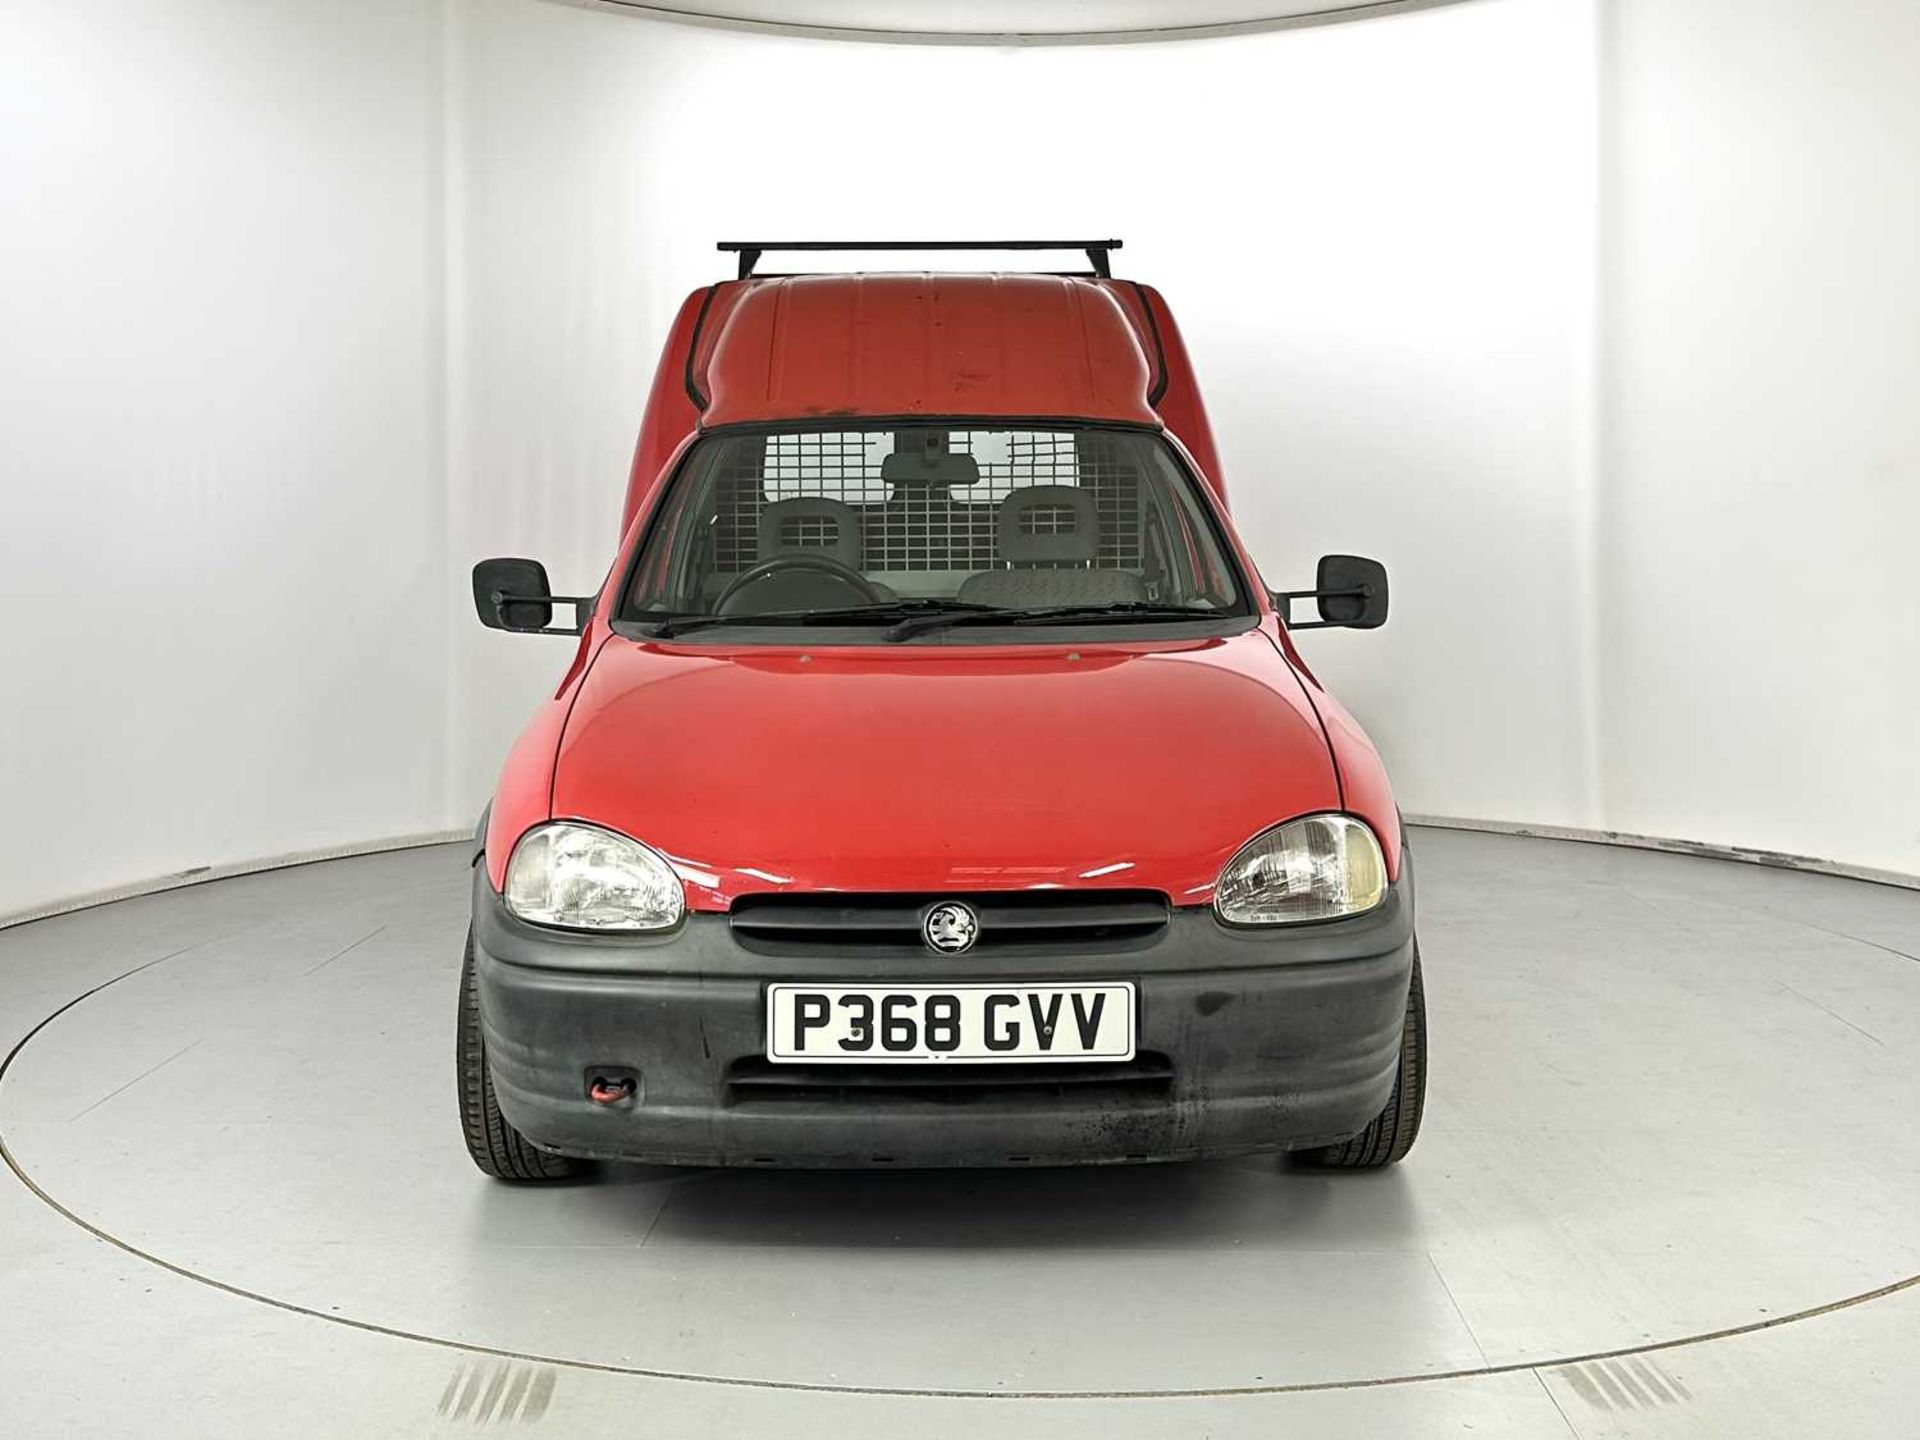 1996 Vauxhall Corsa B Combo - Image 2 of 28